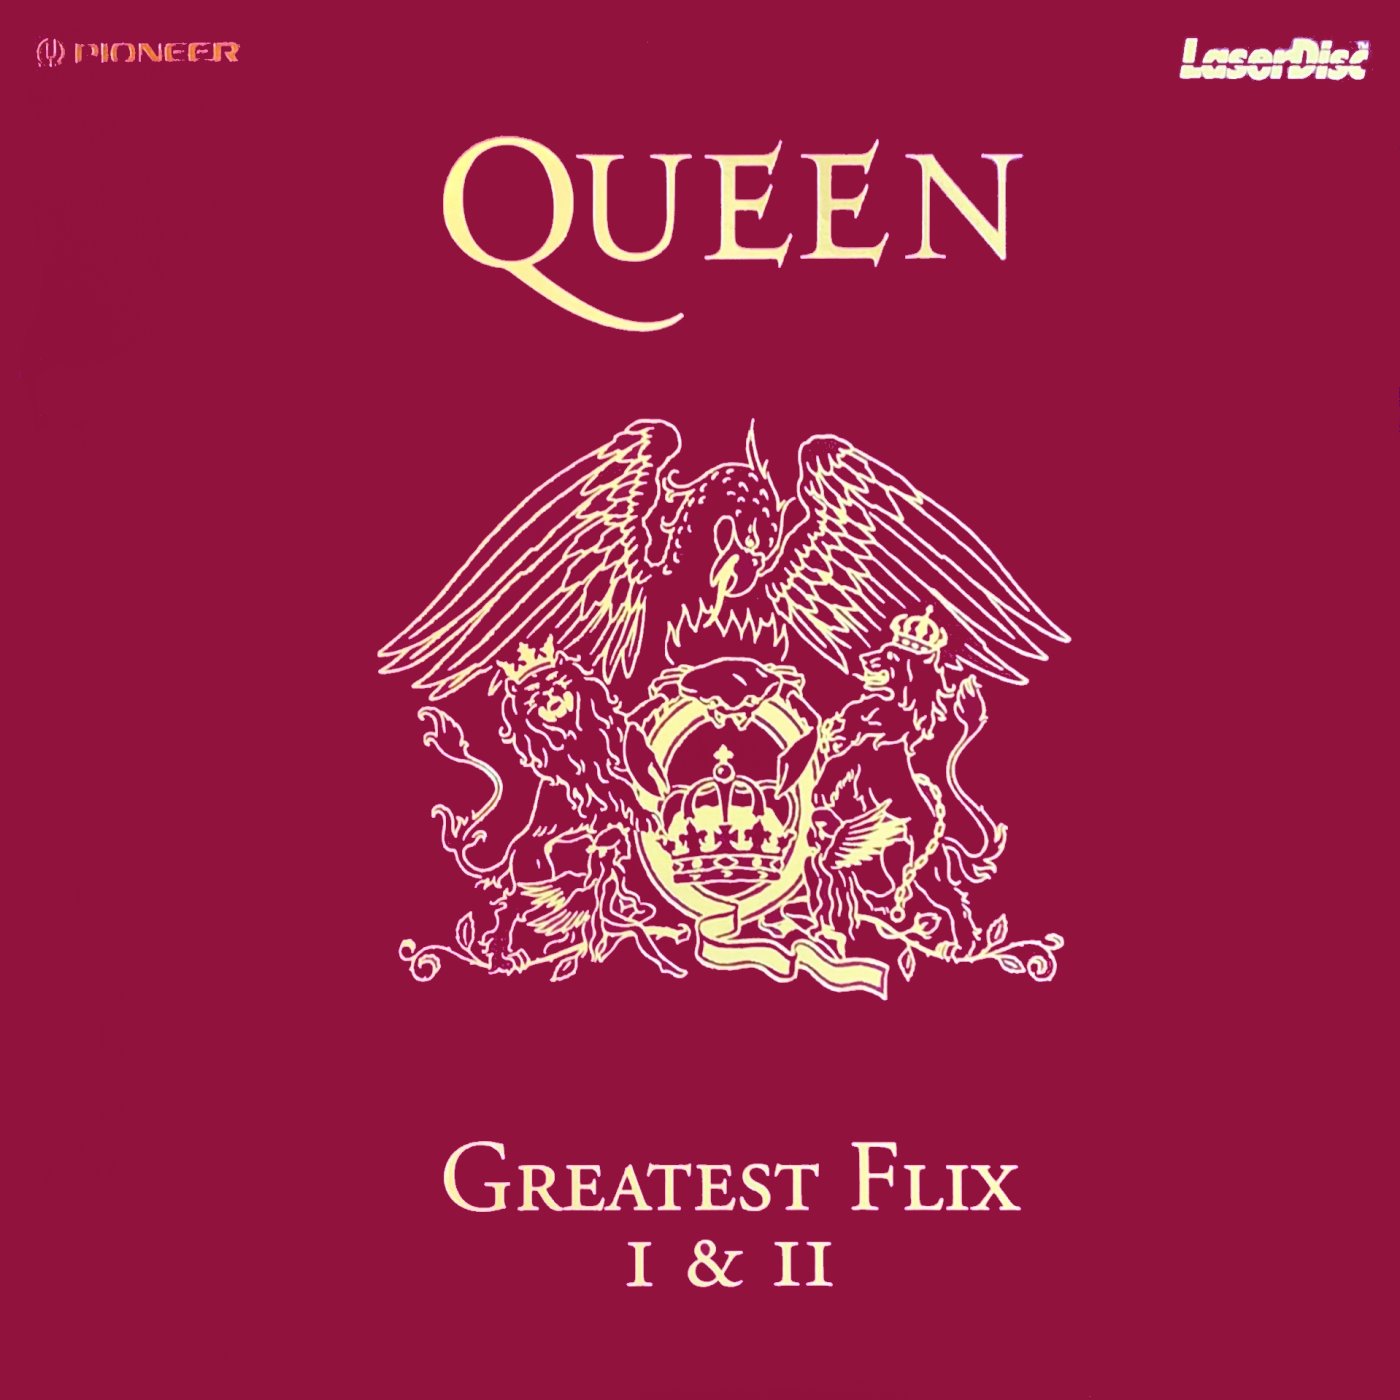 Cover - Queen's Greatest Flix II.jpg